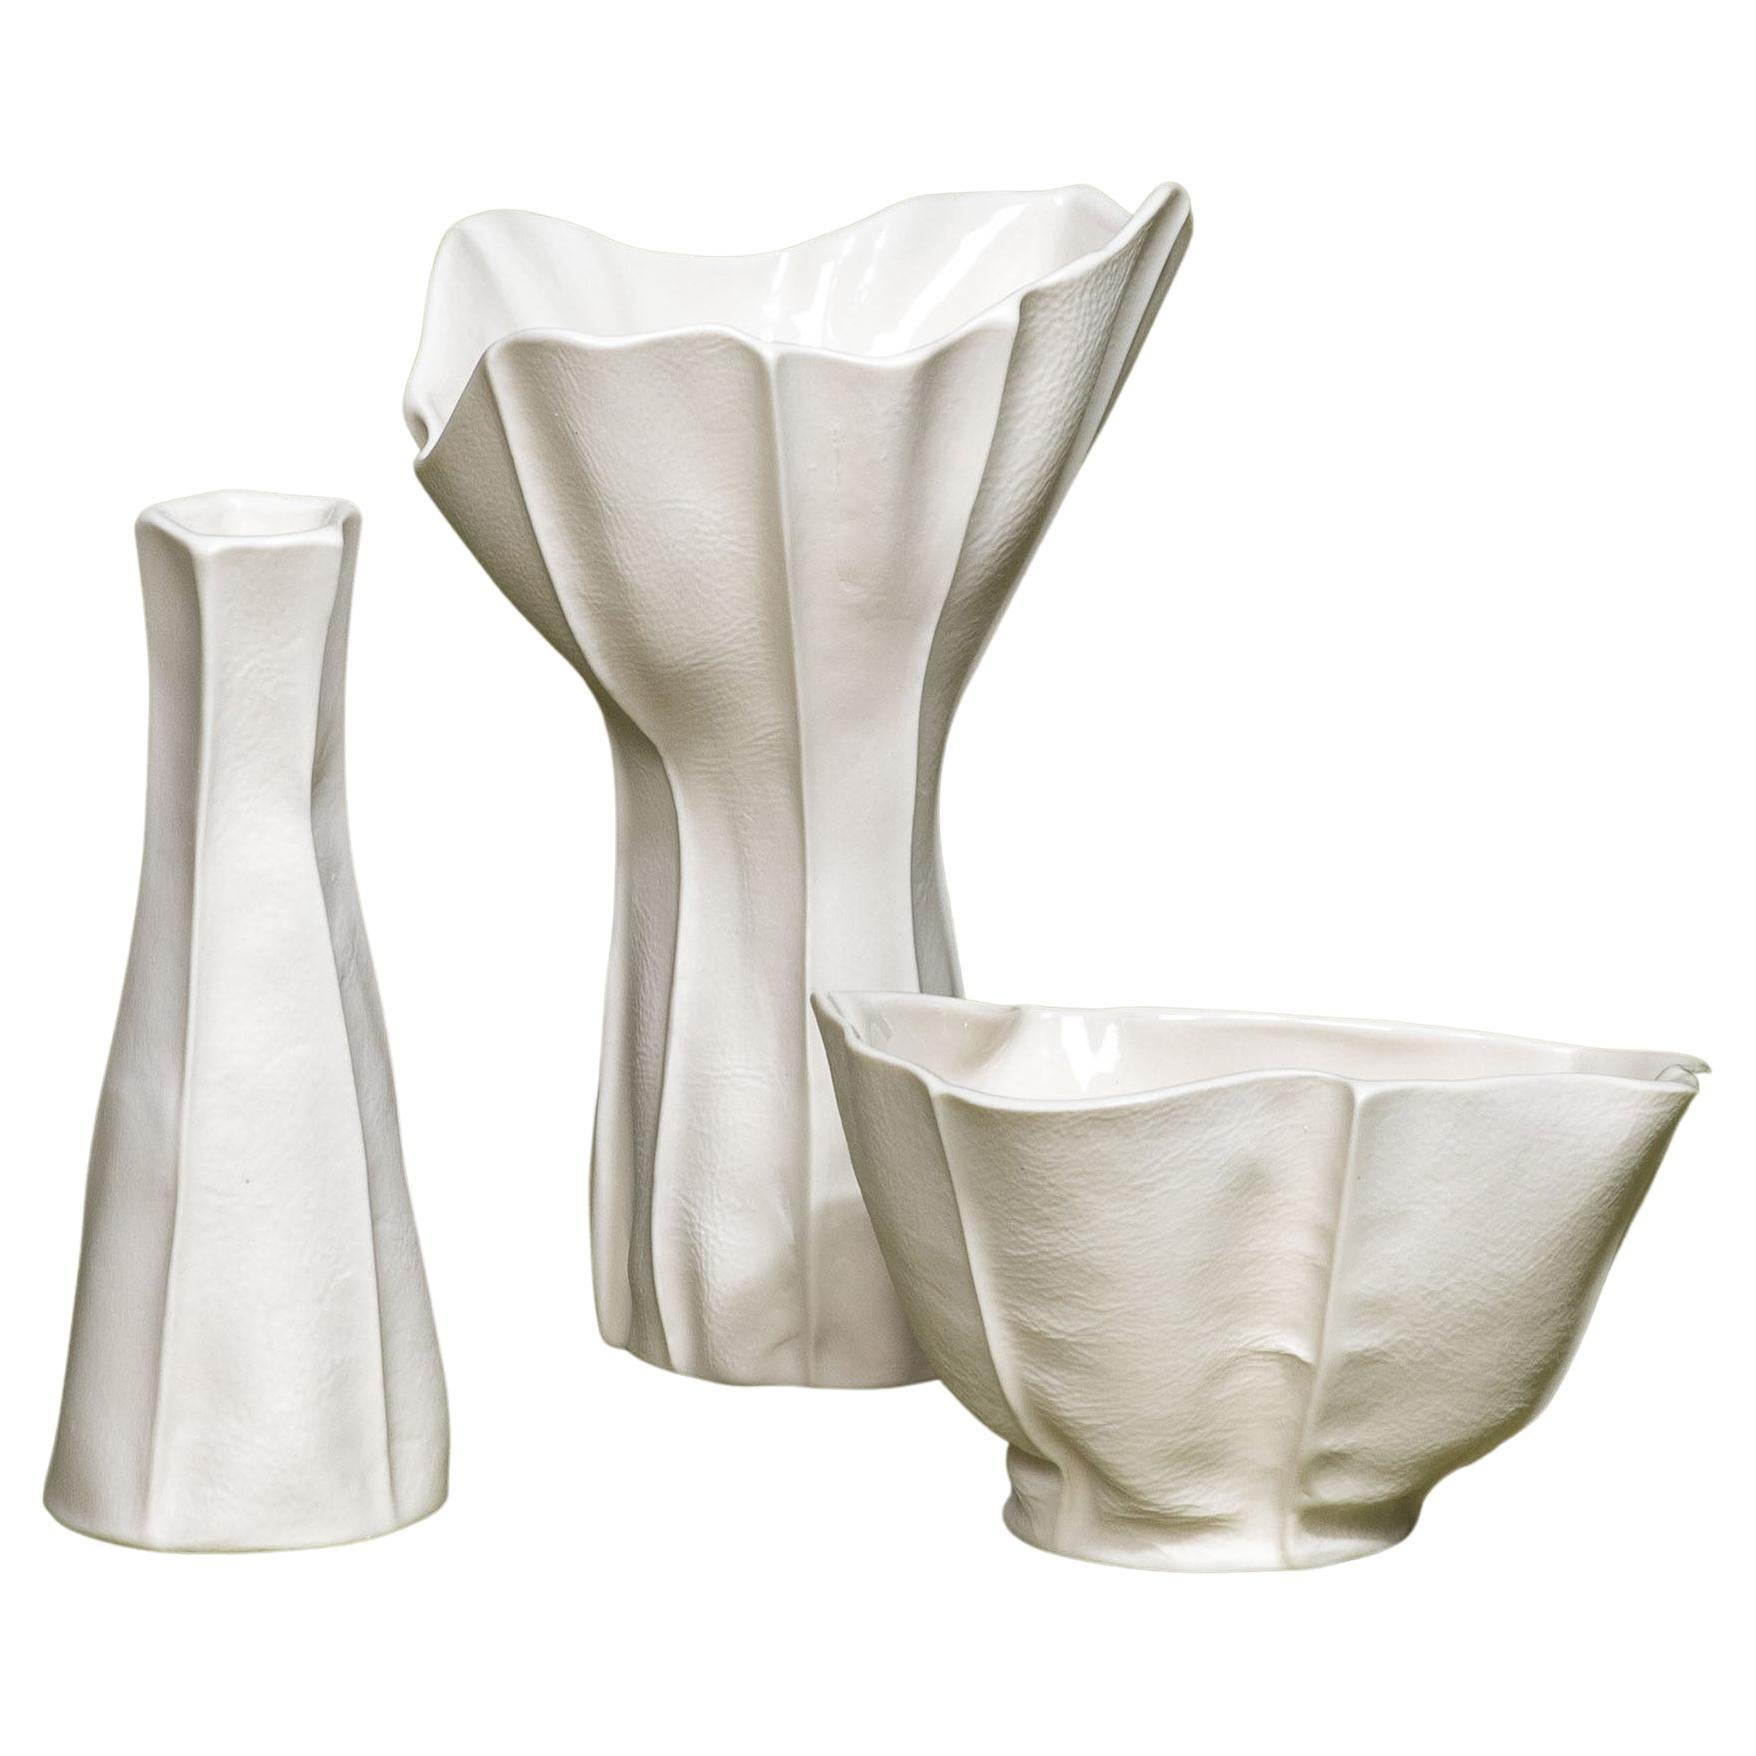 In-Stock, Set of 3 White Ceramic Vases & Bowl, Luft Tanaka, Porcelain, Organic